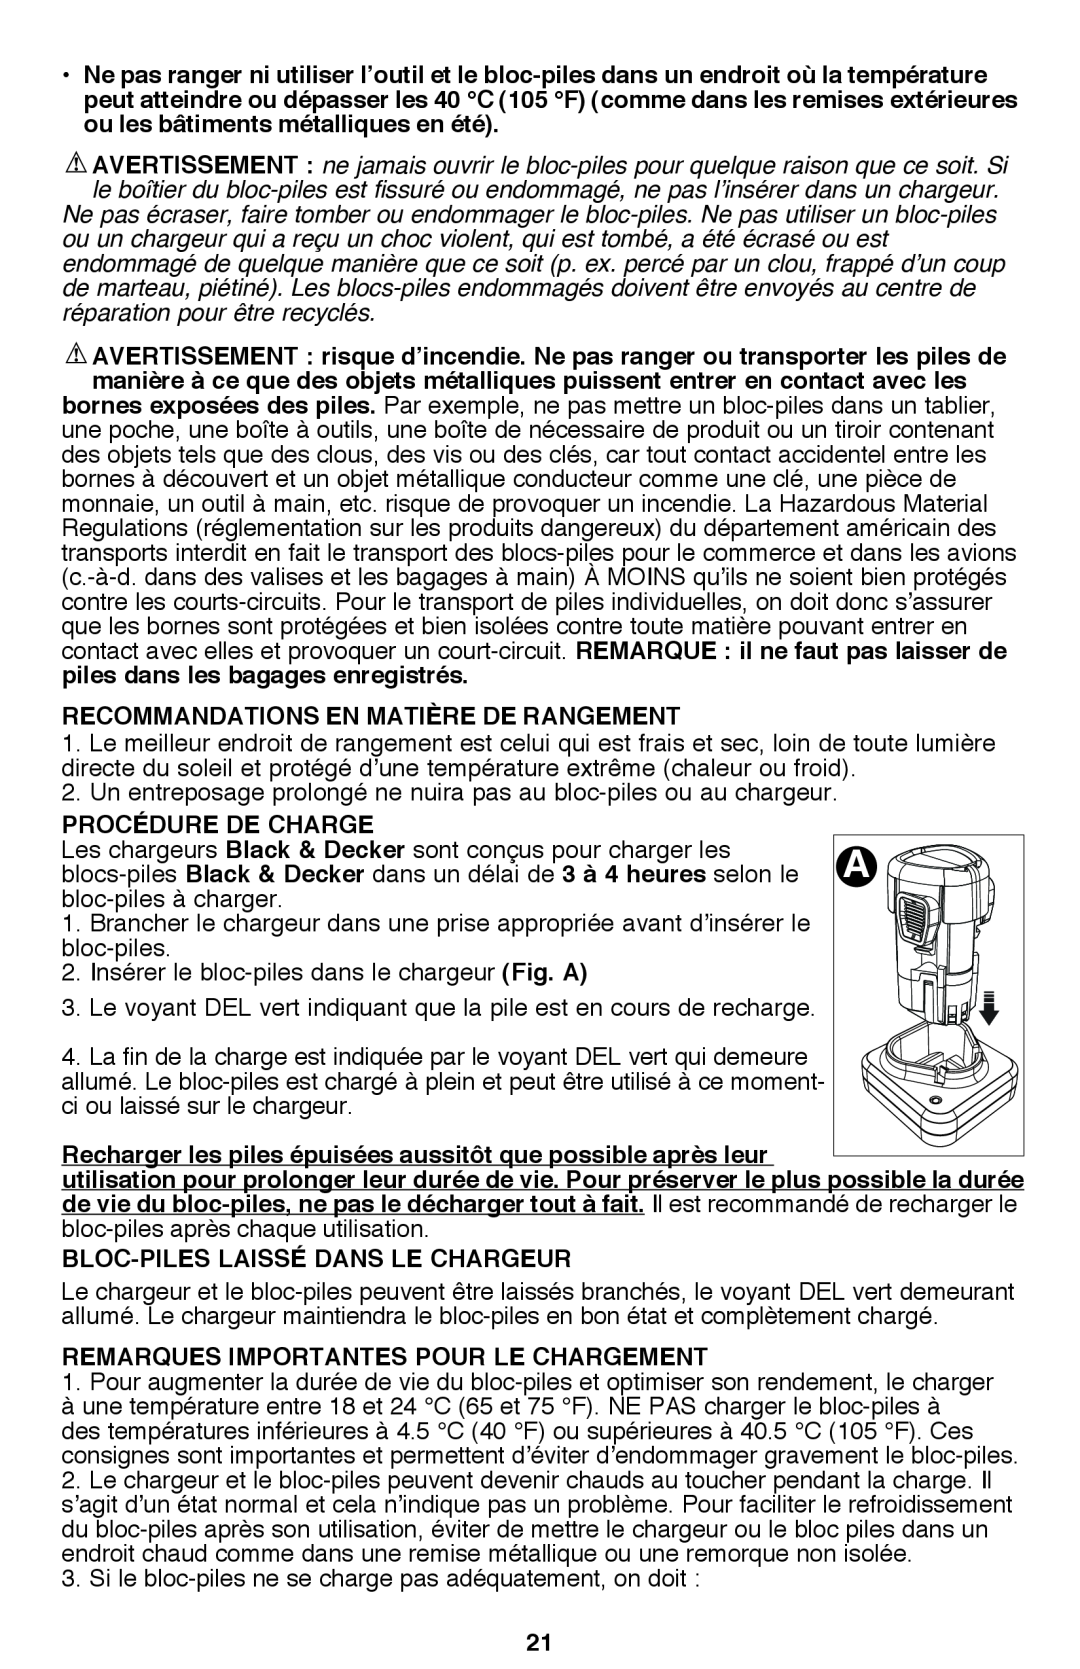 Black & Decker PSL12 Recommandations en matière de rangement, Procédure de charge, Bloc-piles laissé dans le chargeur 